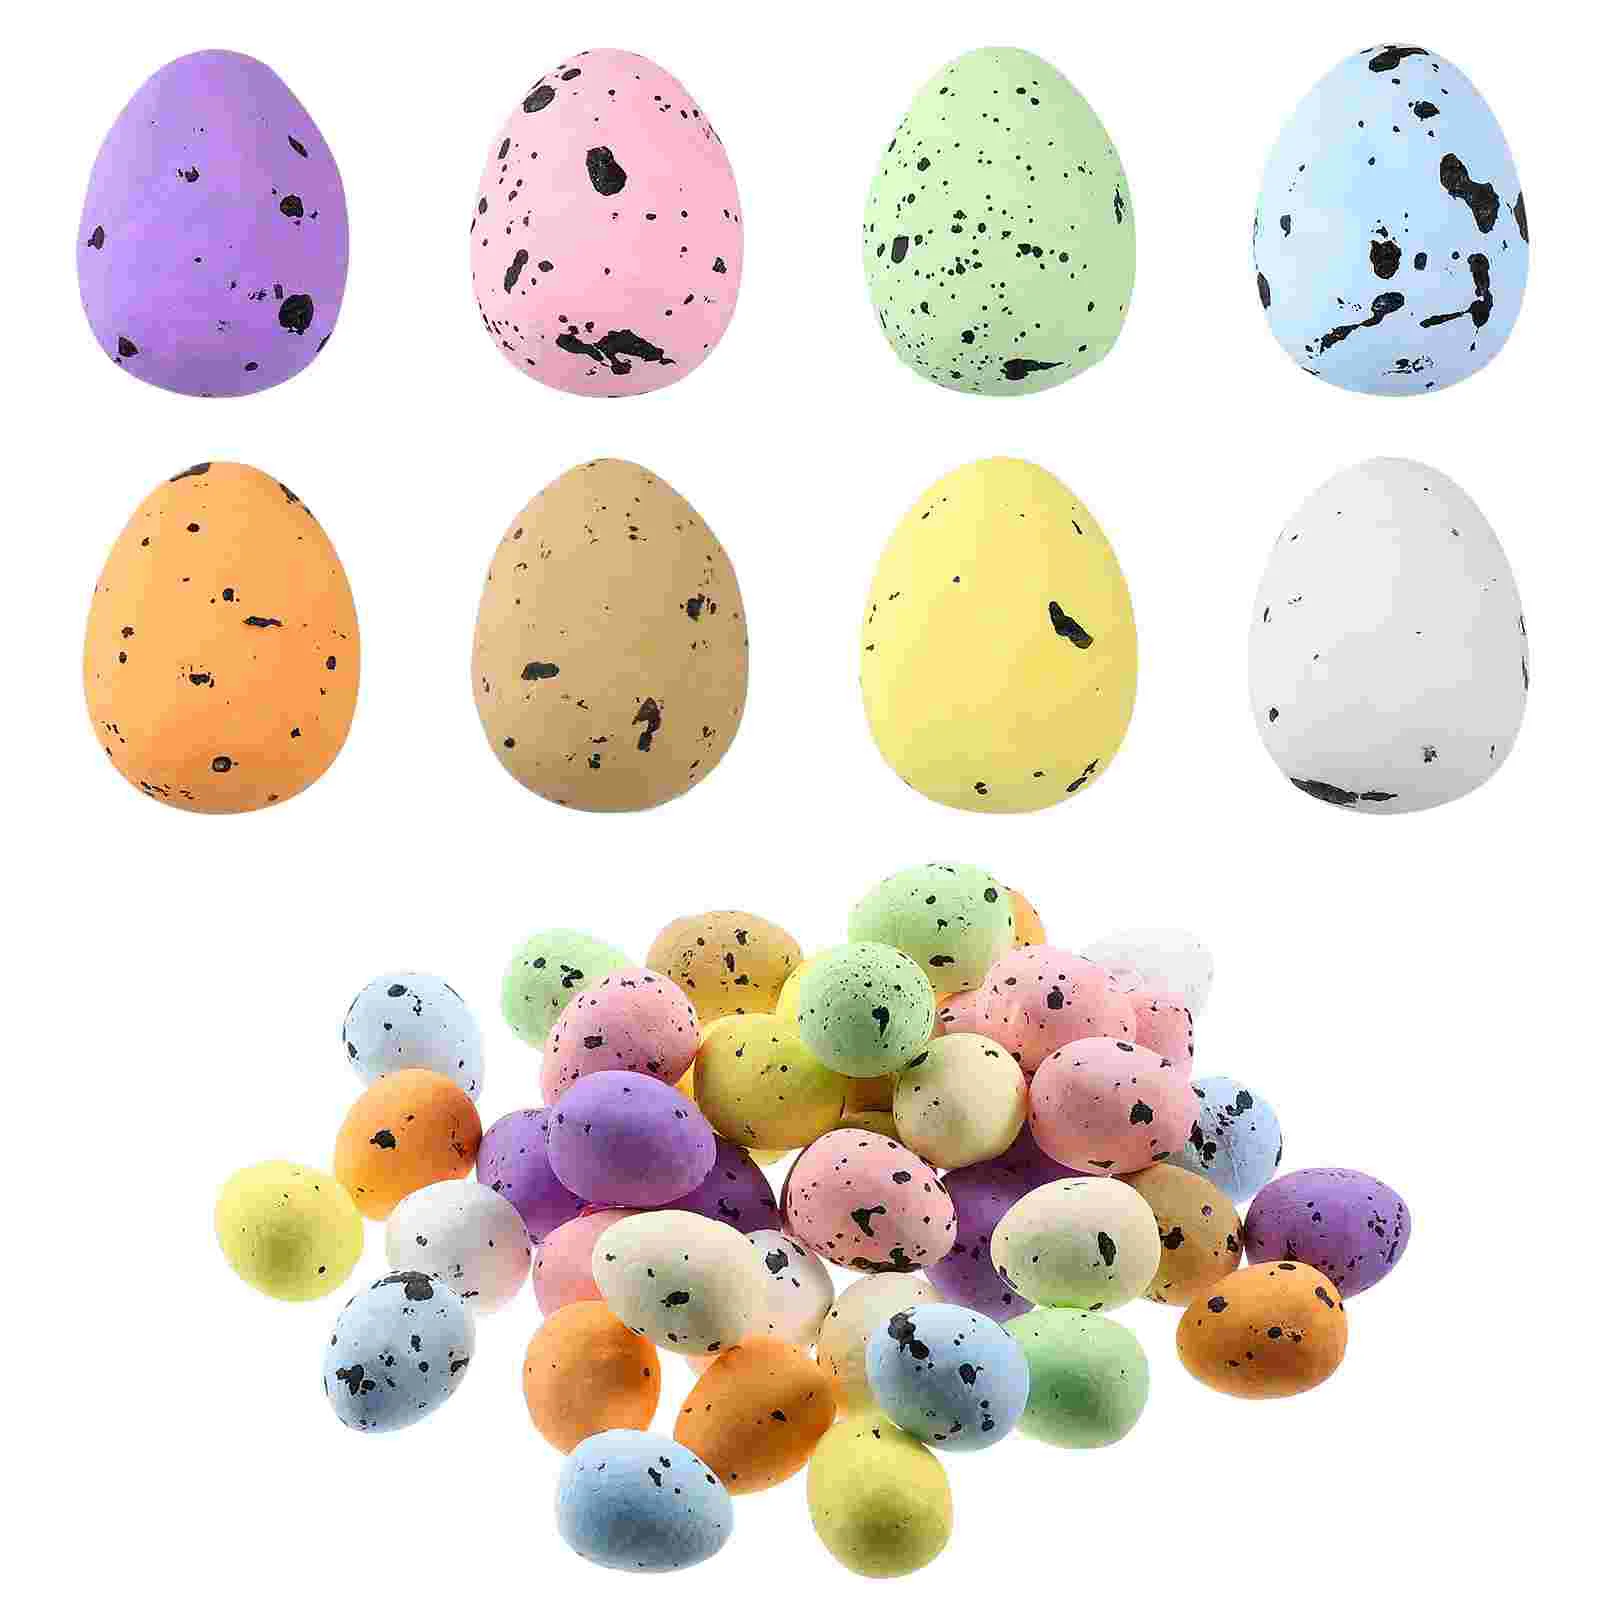 

Eggs Easter Egg Foam Mini Crafts Speckled Bird Fake Diy Decor Filler Basket Artificial Painted Toy Simulation Desktop Artifical